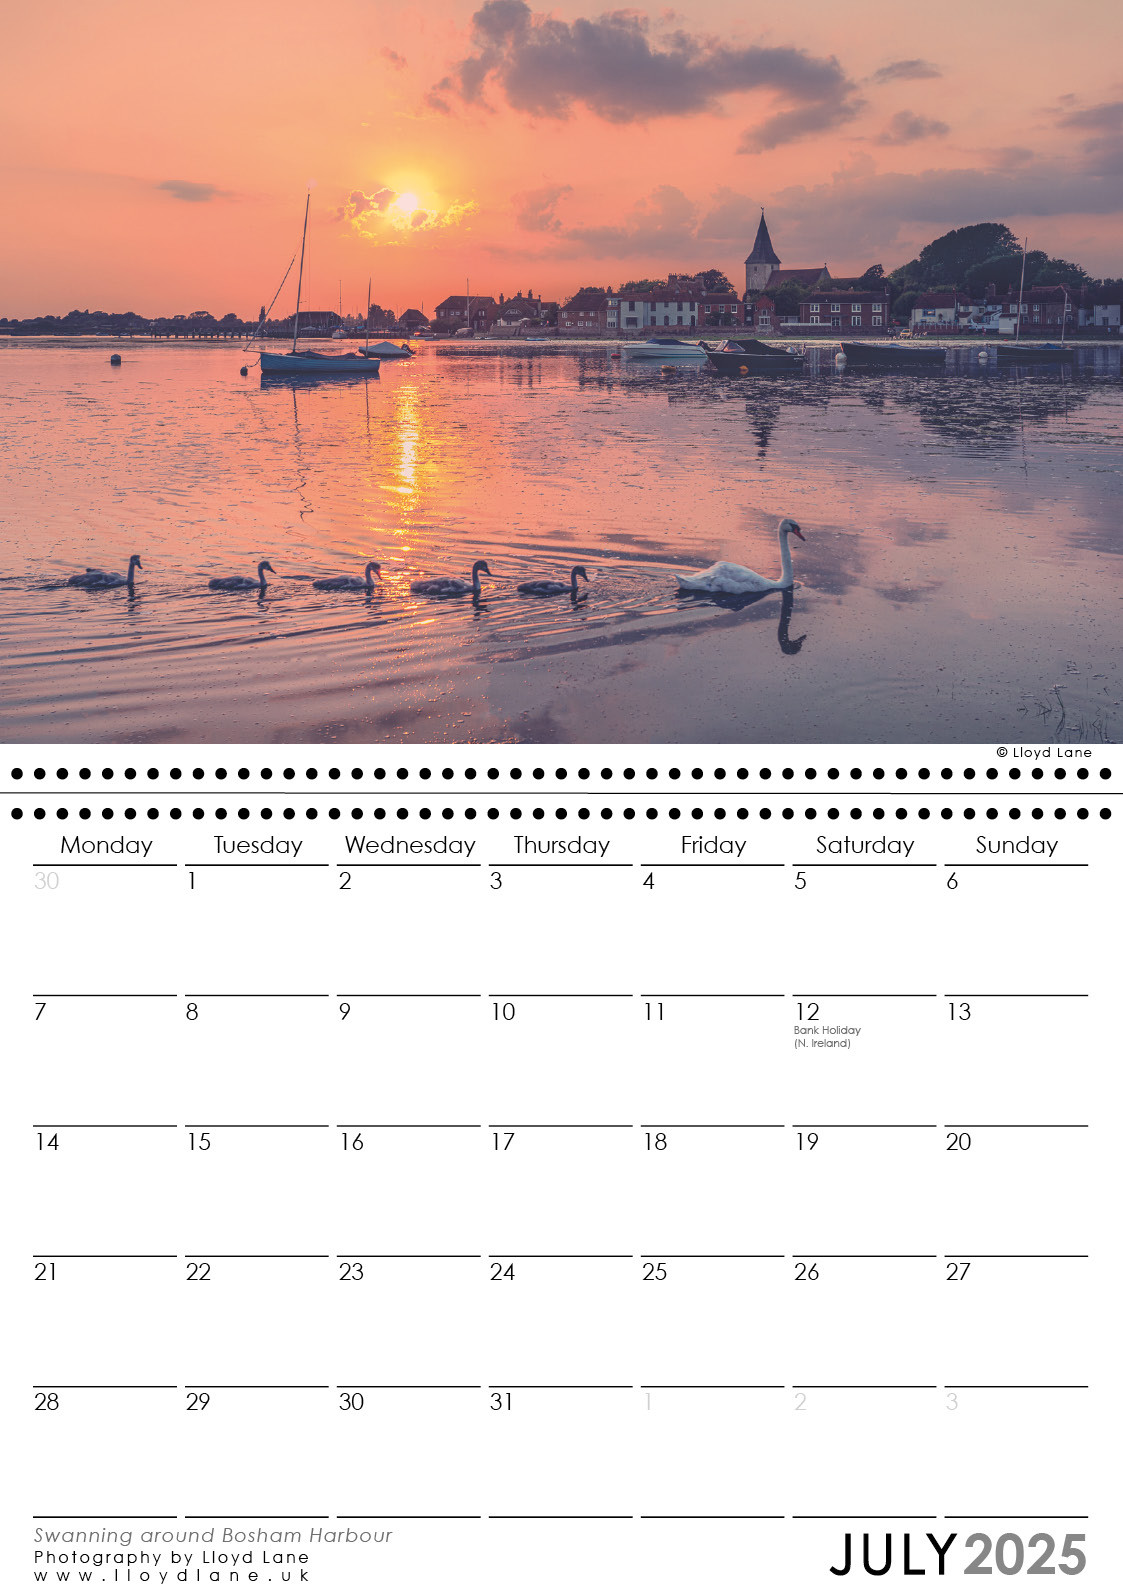 Sussex Calendar 2025 - Swanning around Bosham